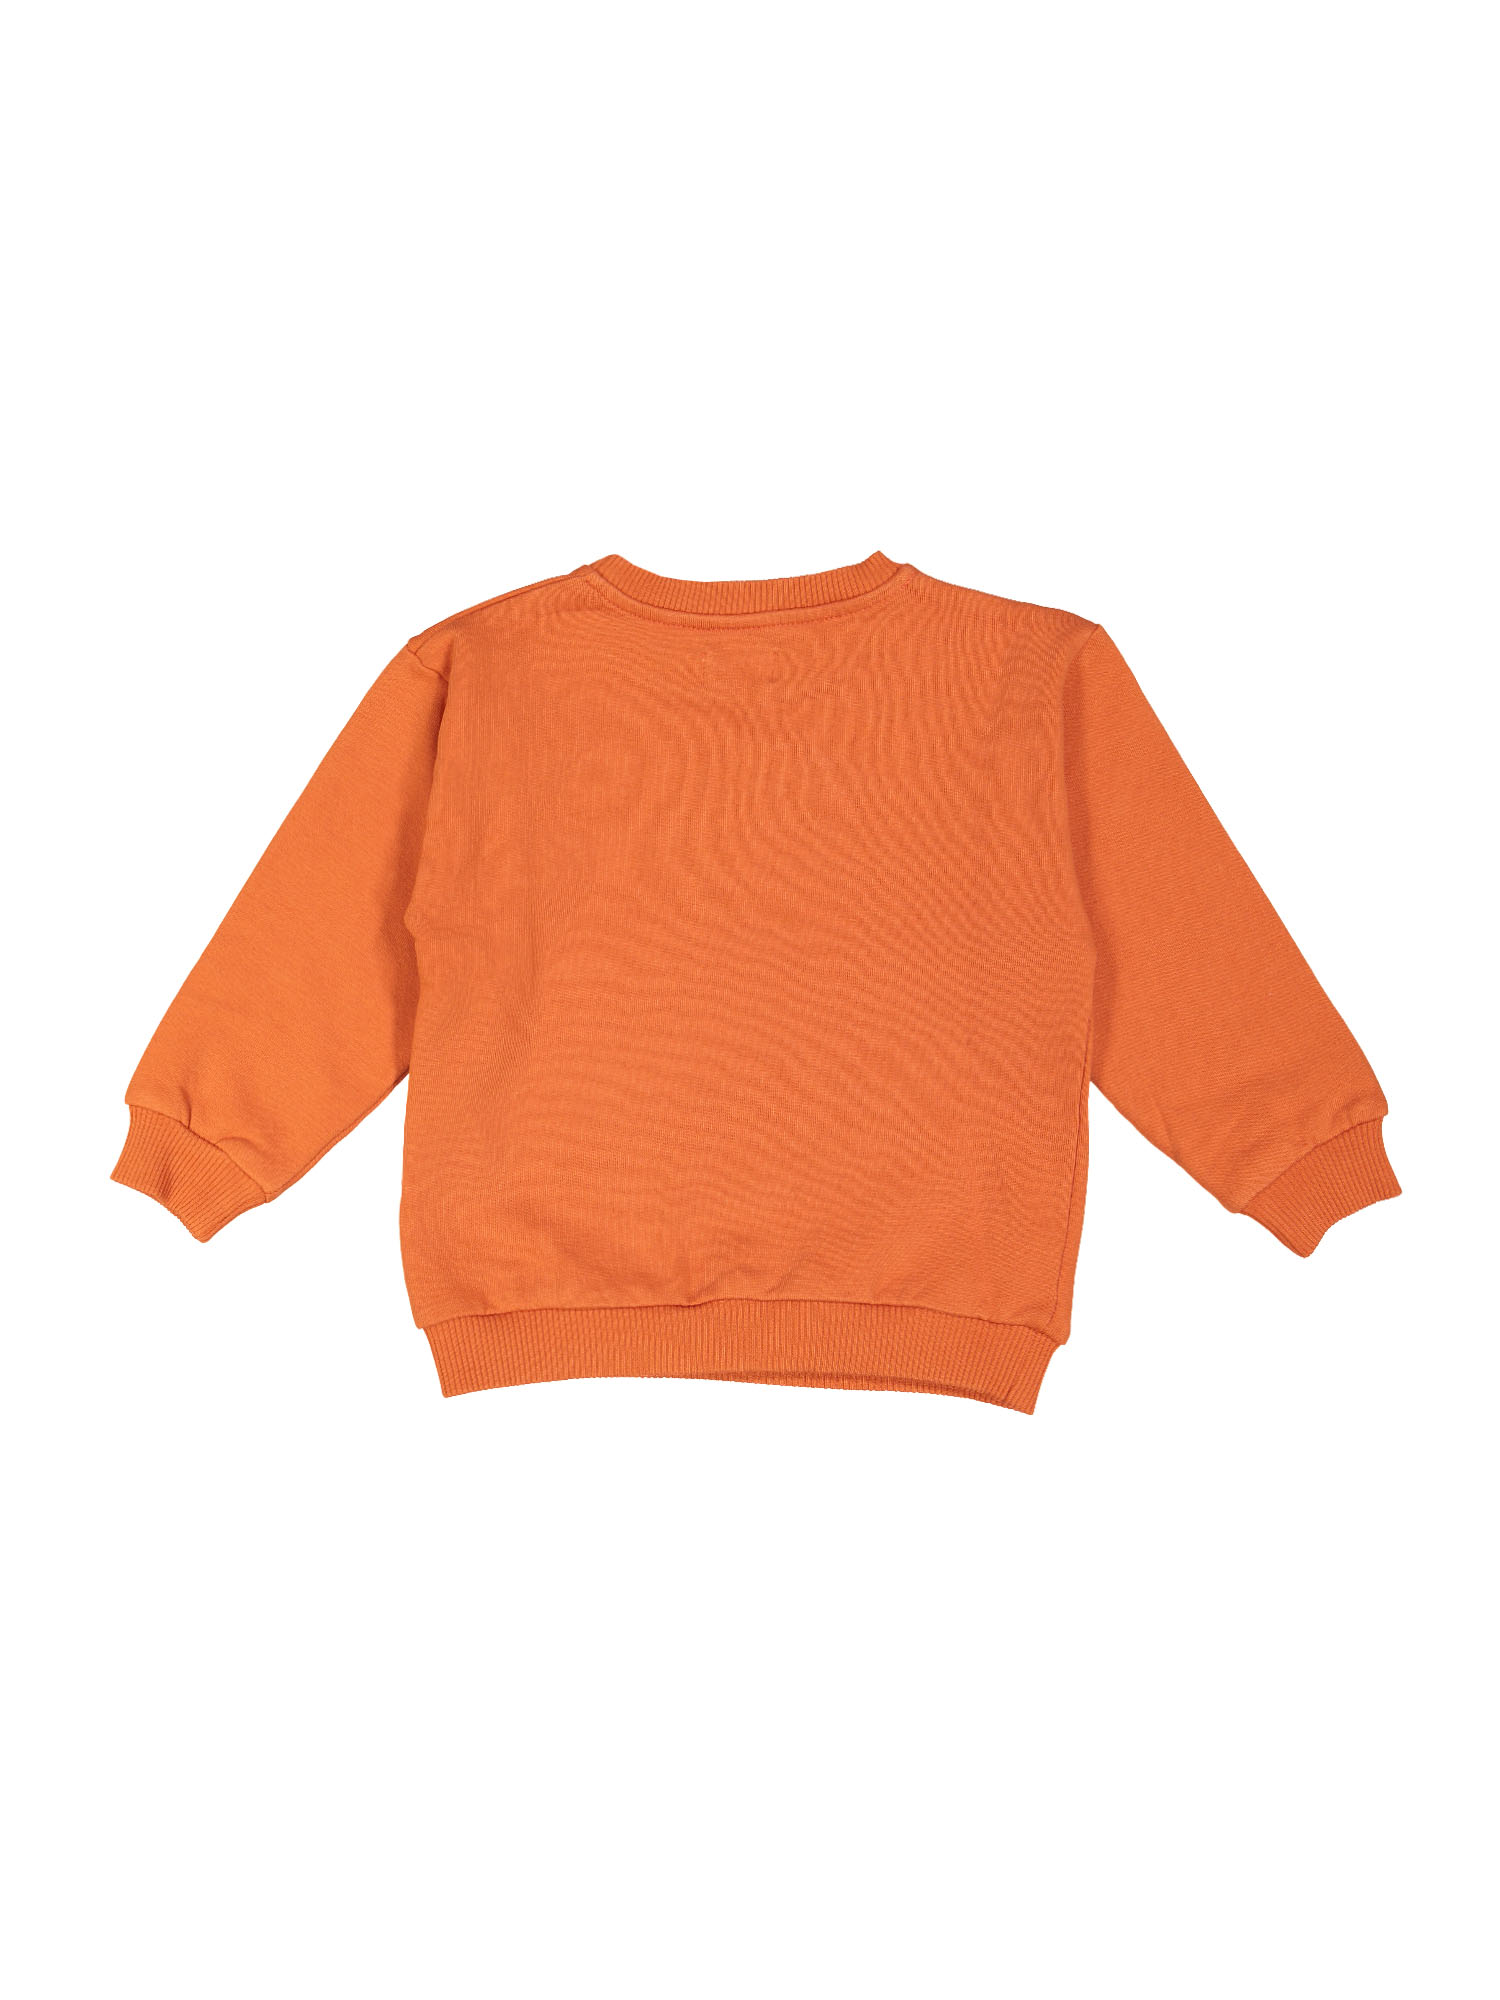 sweater boogie woogie oranje 03j